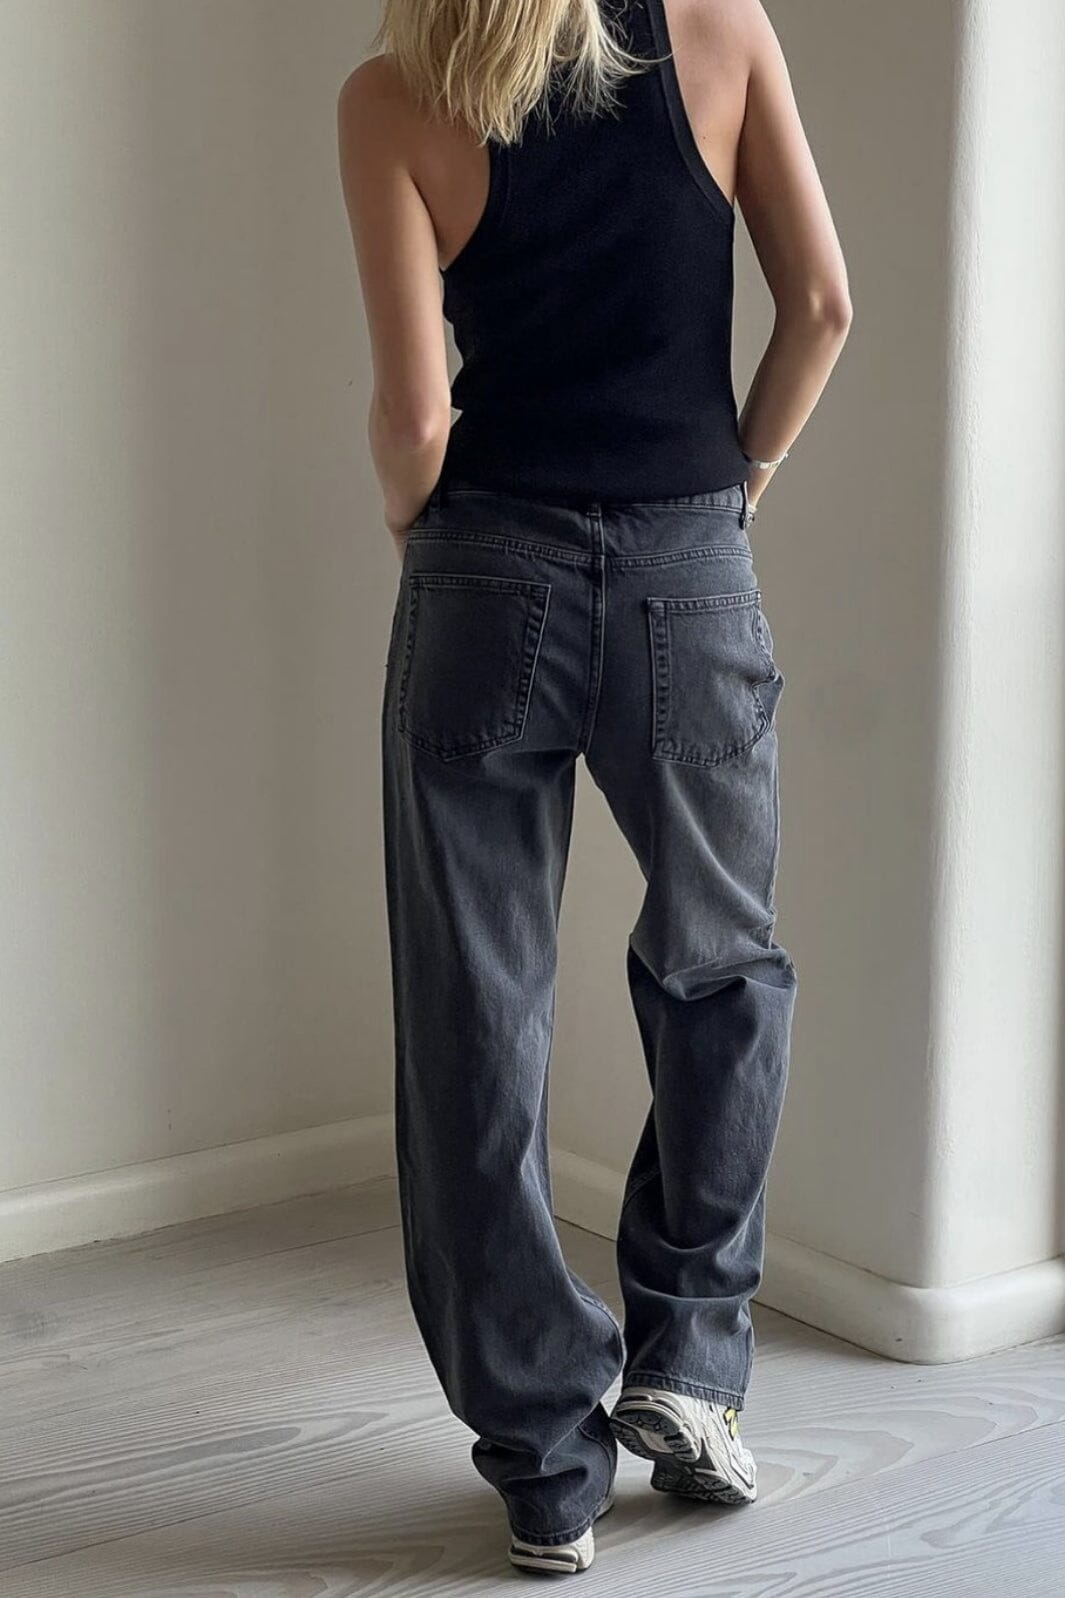 Neo Noir - Simona D Pants - Black Jeans 